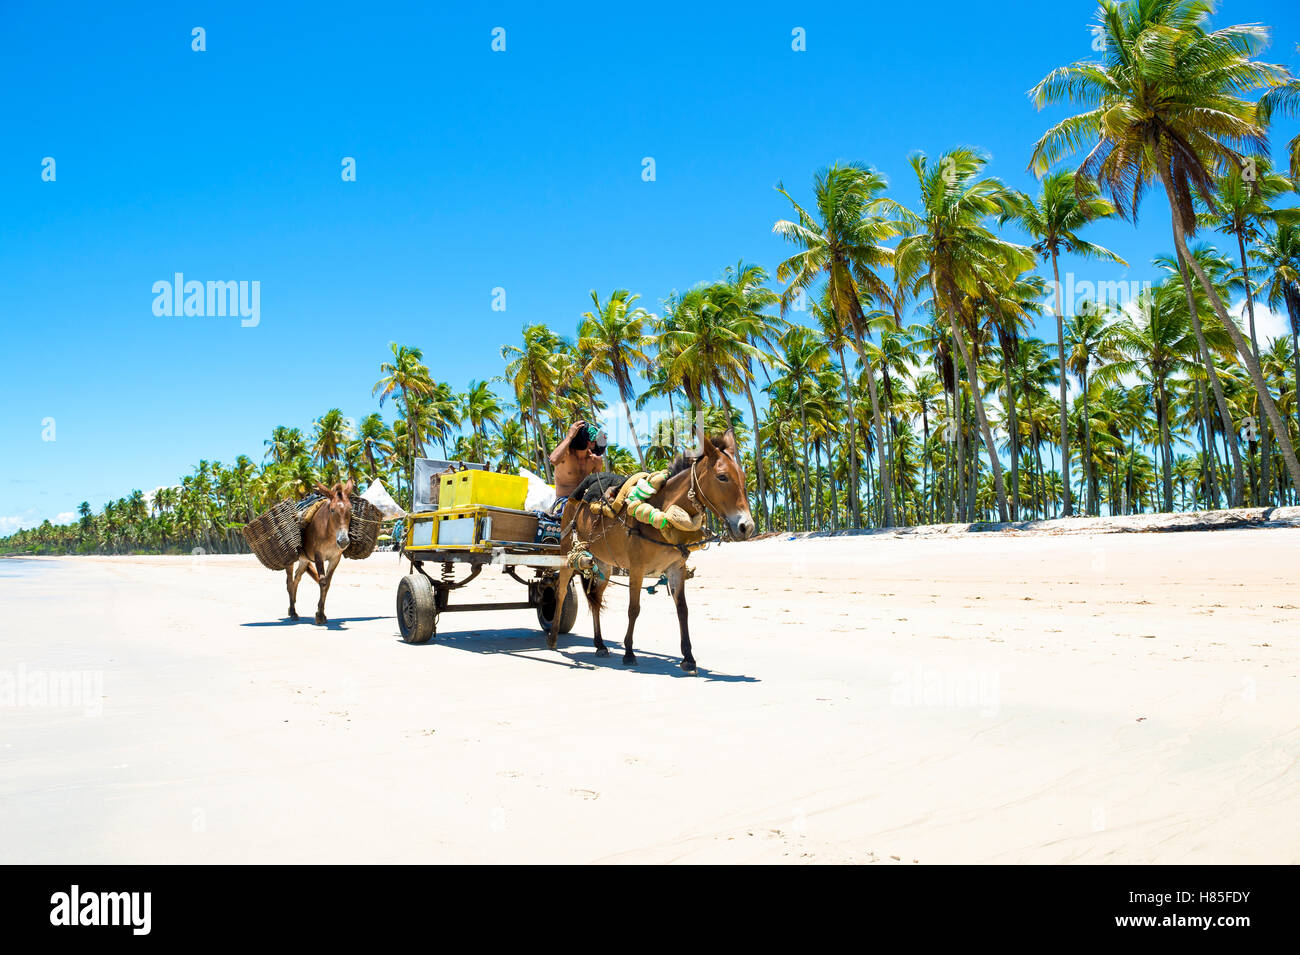 BAHIA, Brasilien - 6. Februar 2016: Brasilianische Mann fährt einen Wagen mit zwei Arbeiten Esel vorbei am Strand einer einsamen Insel. Stockfoto